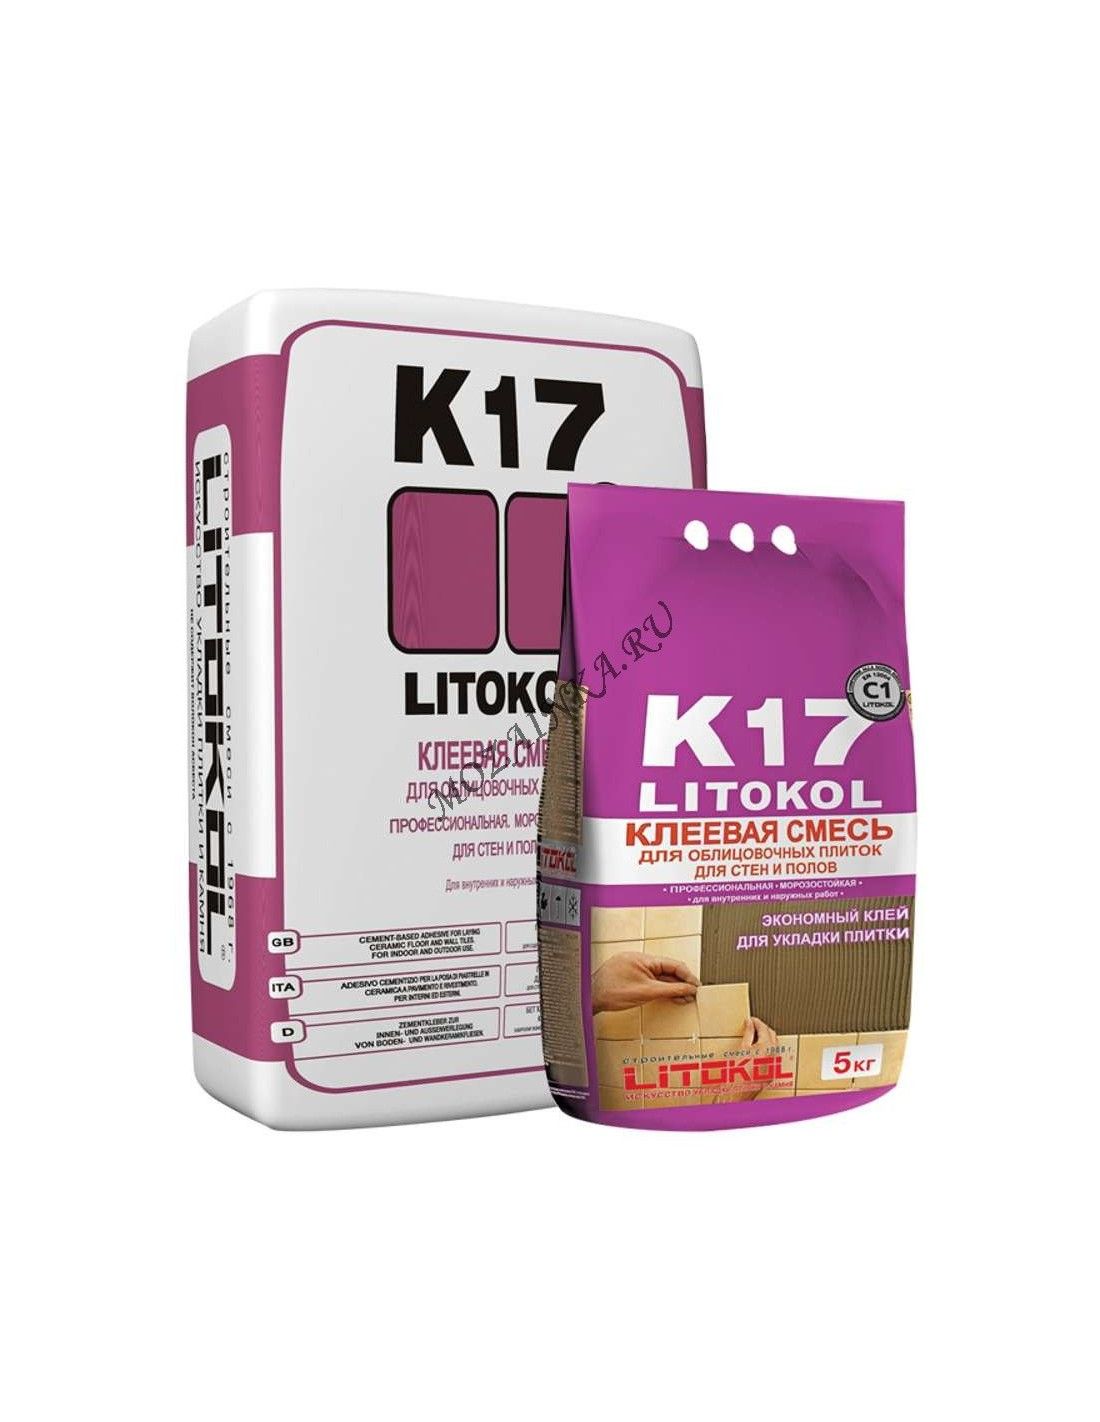 Купить клей литокол. Litokol k17 25 кг. Клей для плитки Litokol k17 5 кг. Клей для плитки Litokol k17 25 кг. Клеевая смесь k17 25кг Litokol.